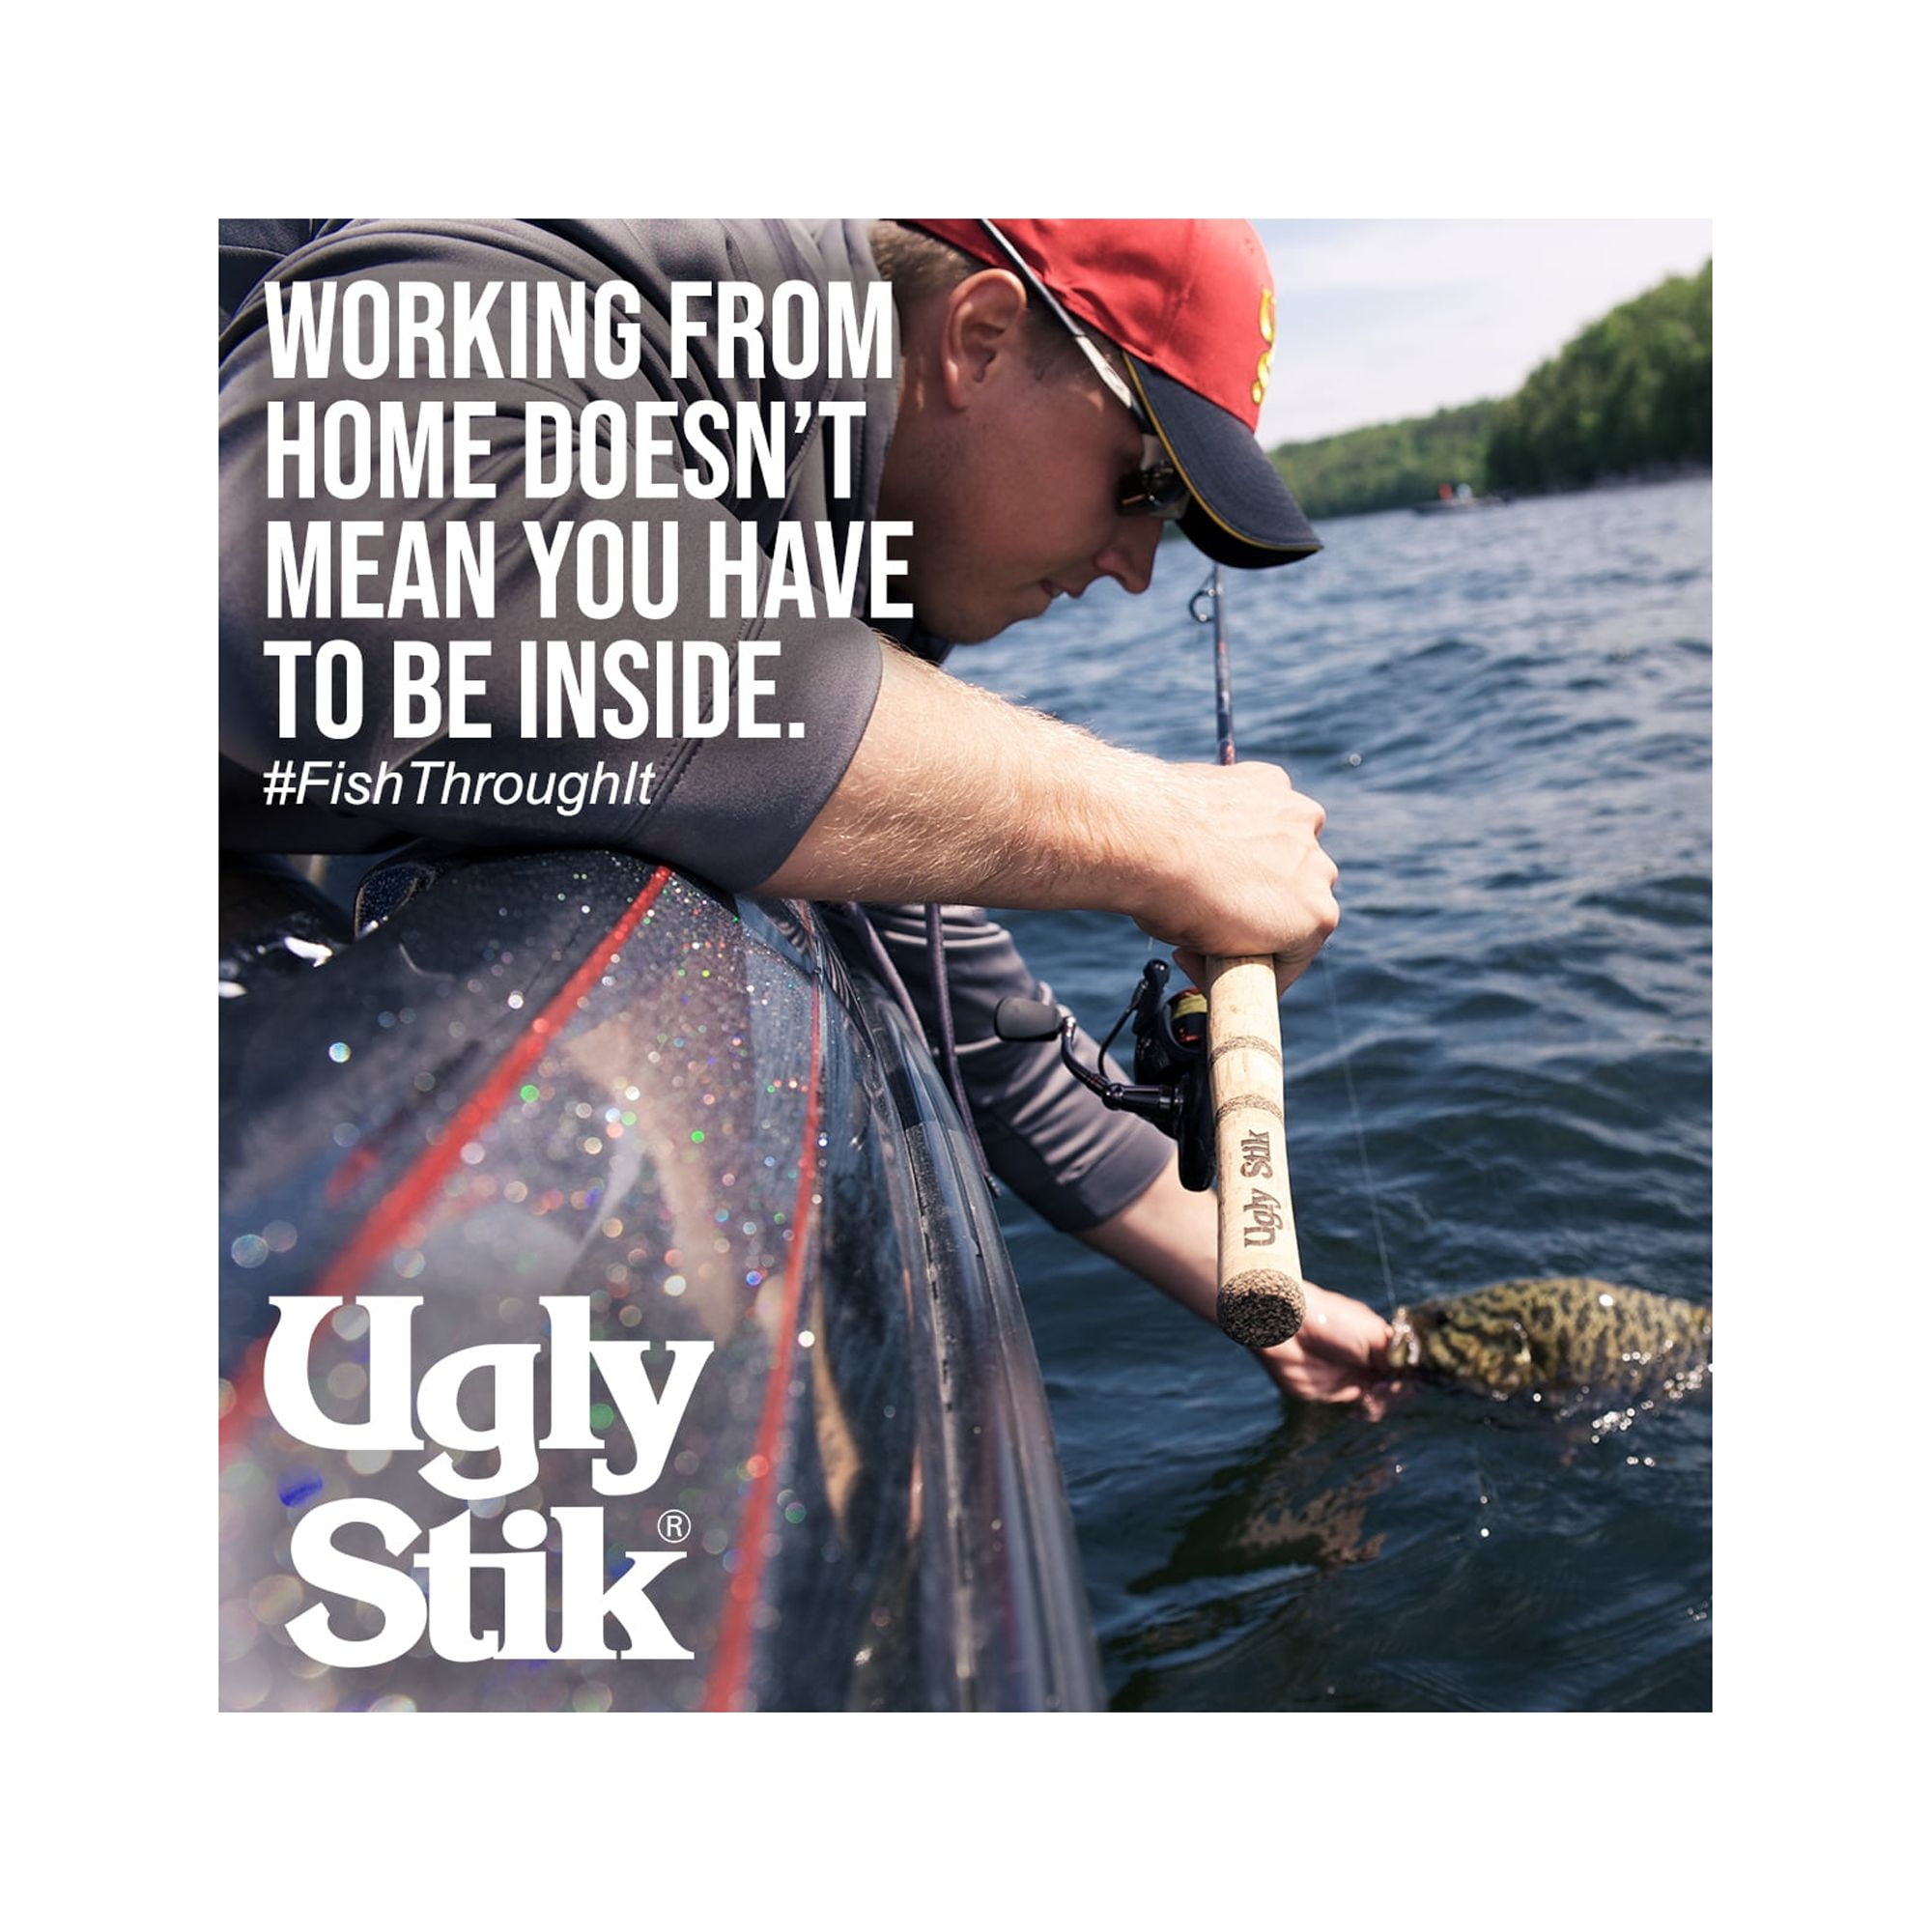 Ugly Stik 7’ Catfish Spinning Fishing Rod and Reel Catfish Combo